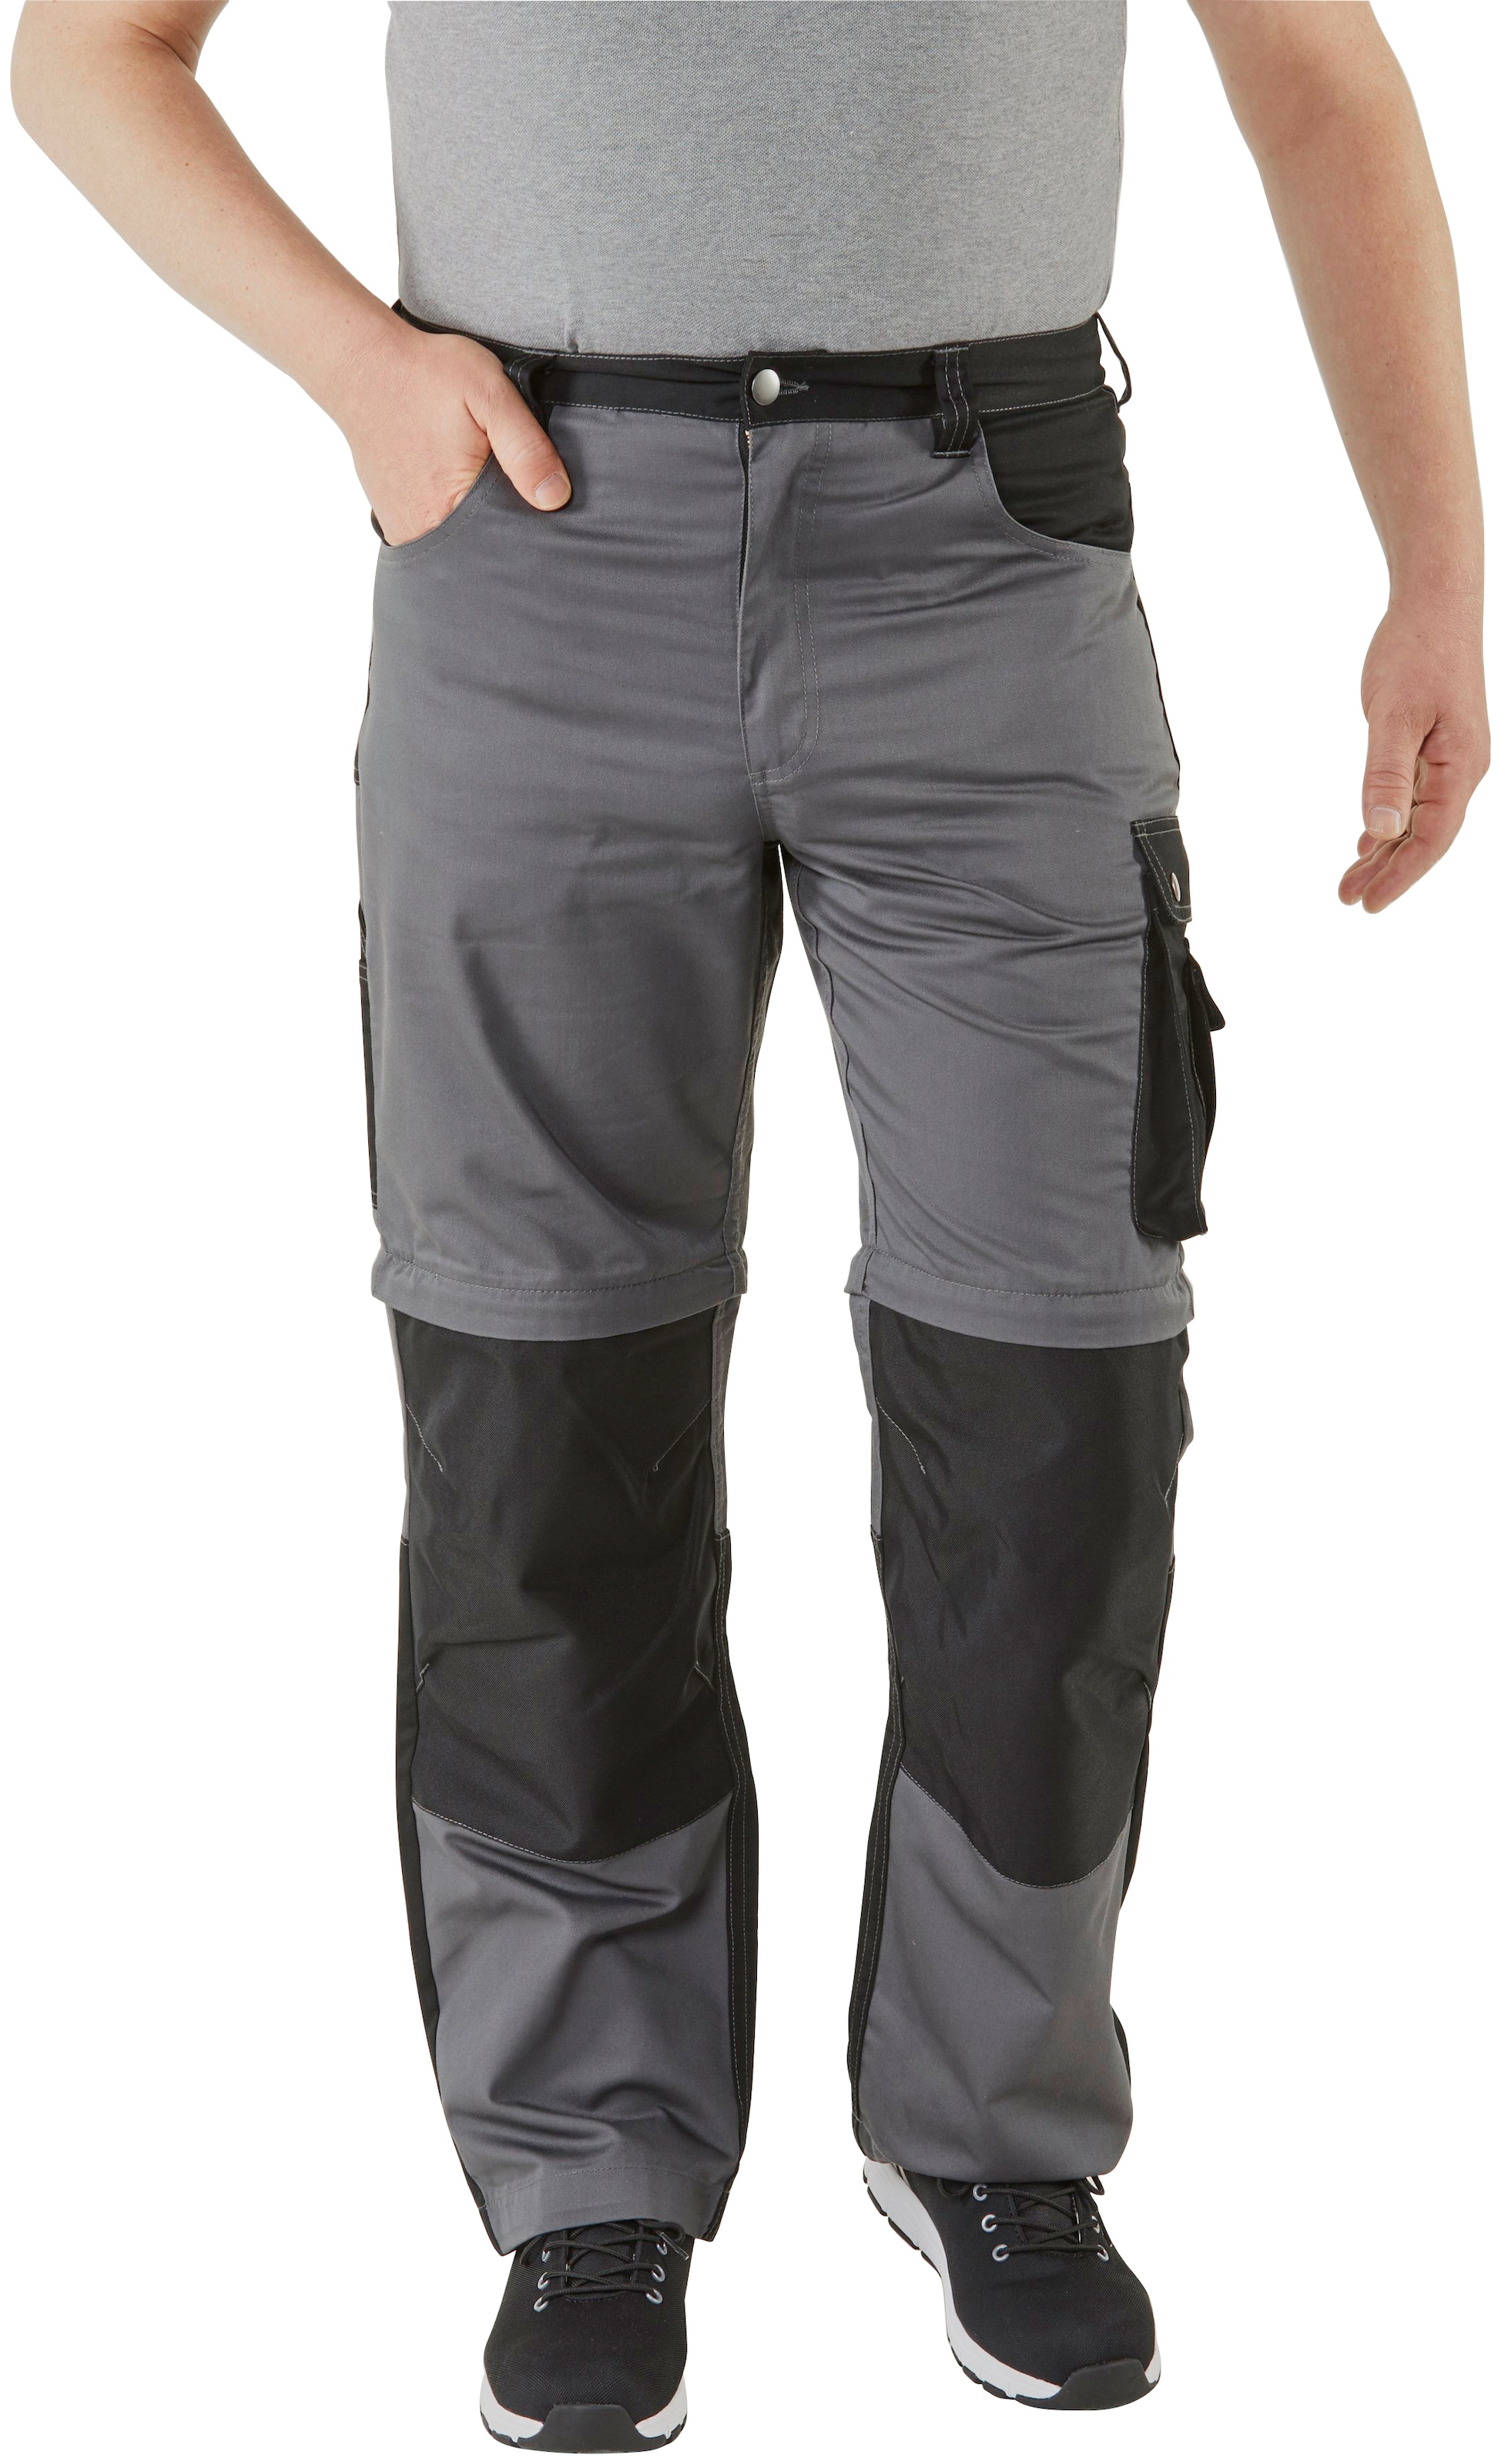 Northern Country Arbeitshose »Worker«, (verstärkter Kniebereich, Beinverlängerung  möglich, 8 Taschen), mit Zipp-off Funktion: Shorts und lange Arbeitshose in  einem online kaufen | Baumwollhosen